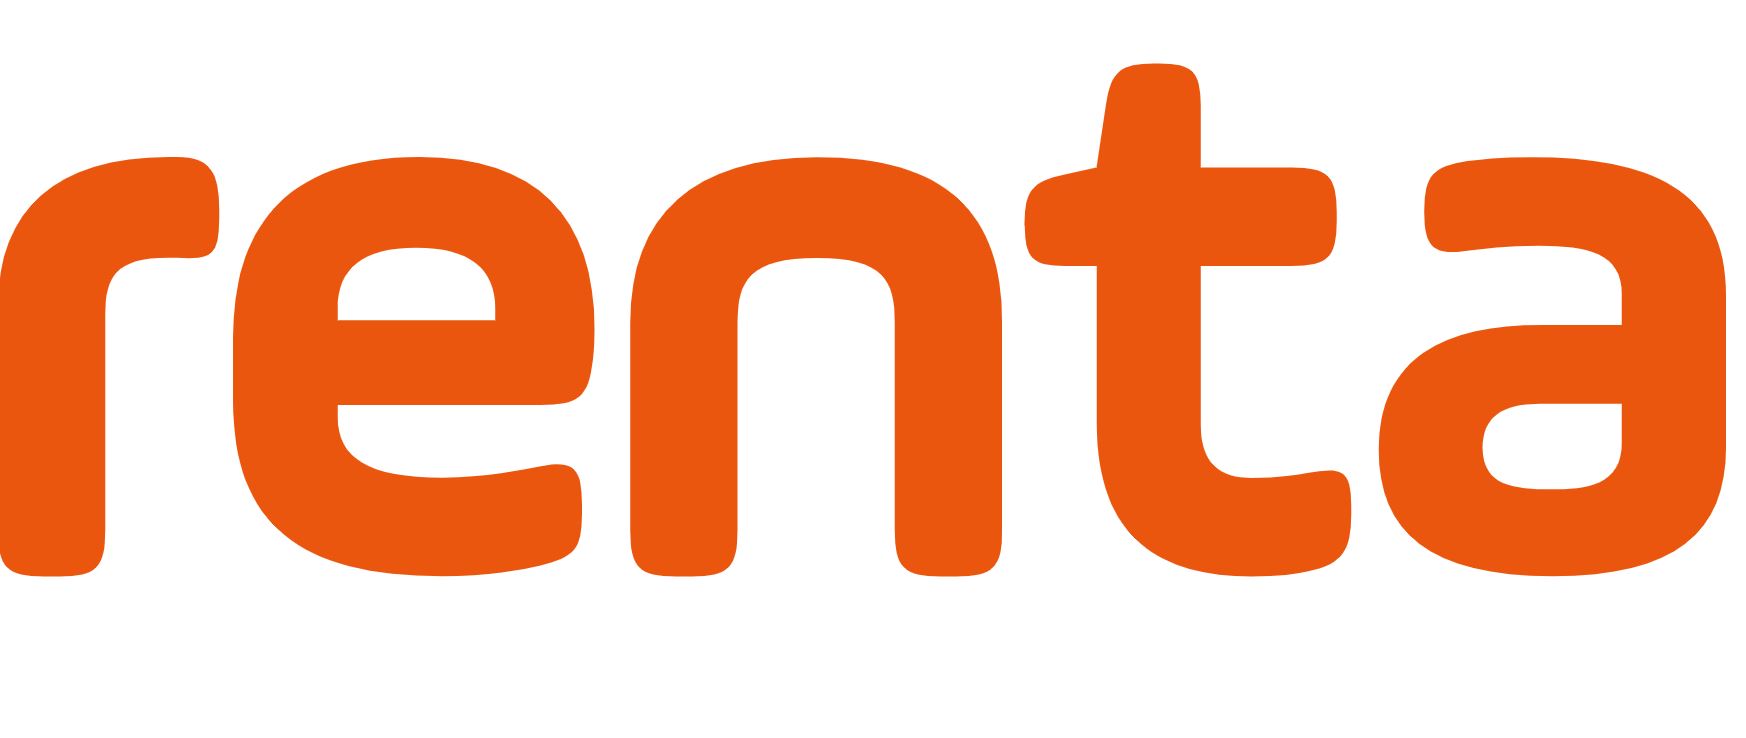 Renta AS logo